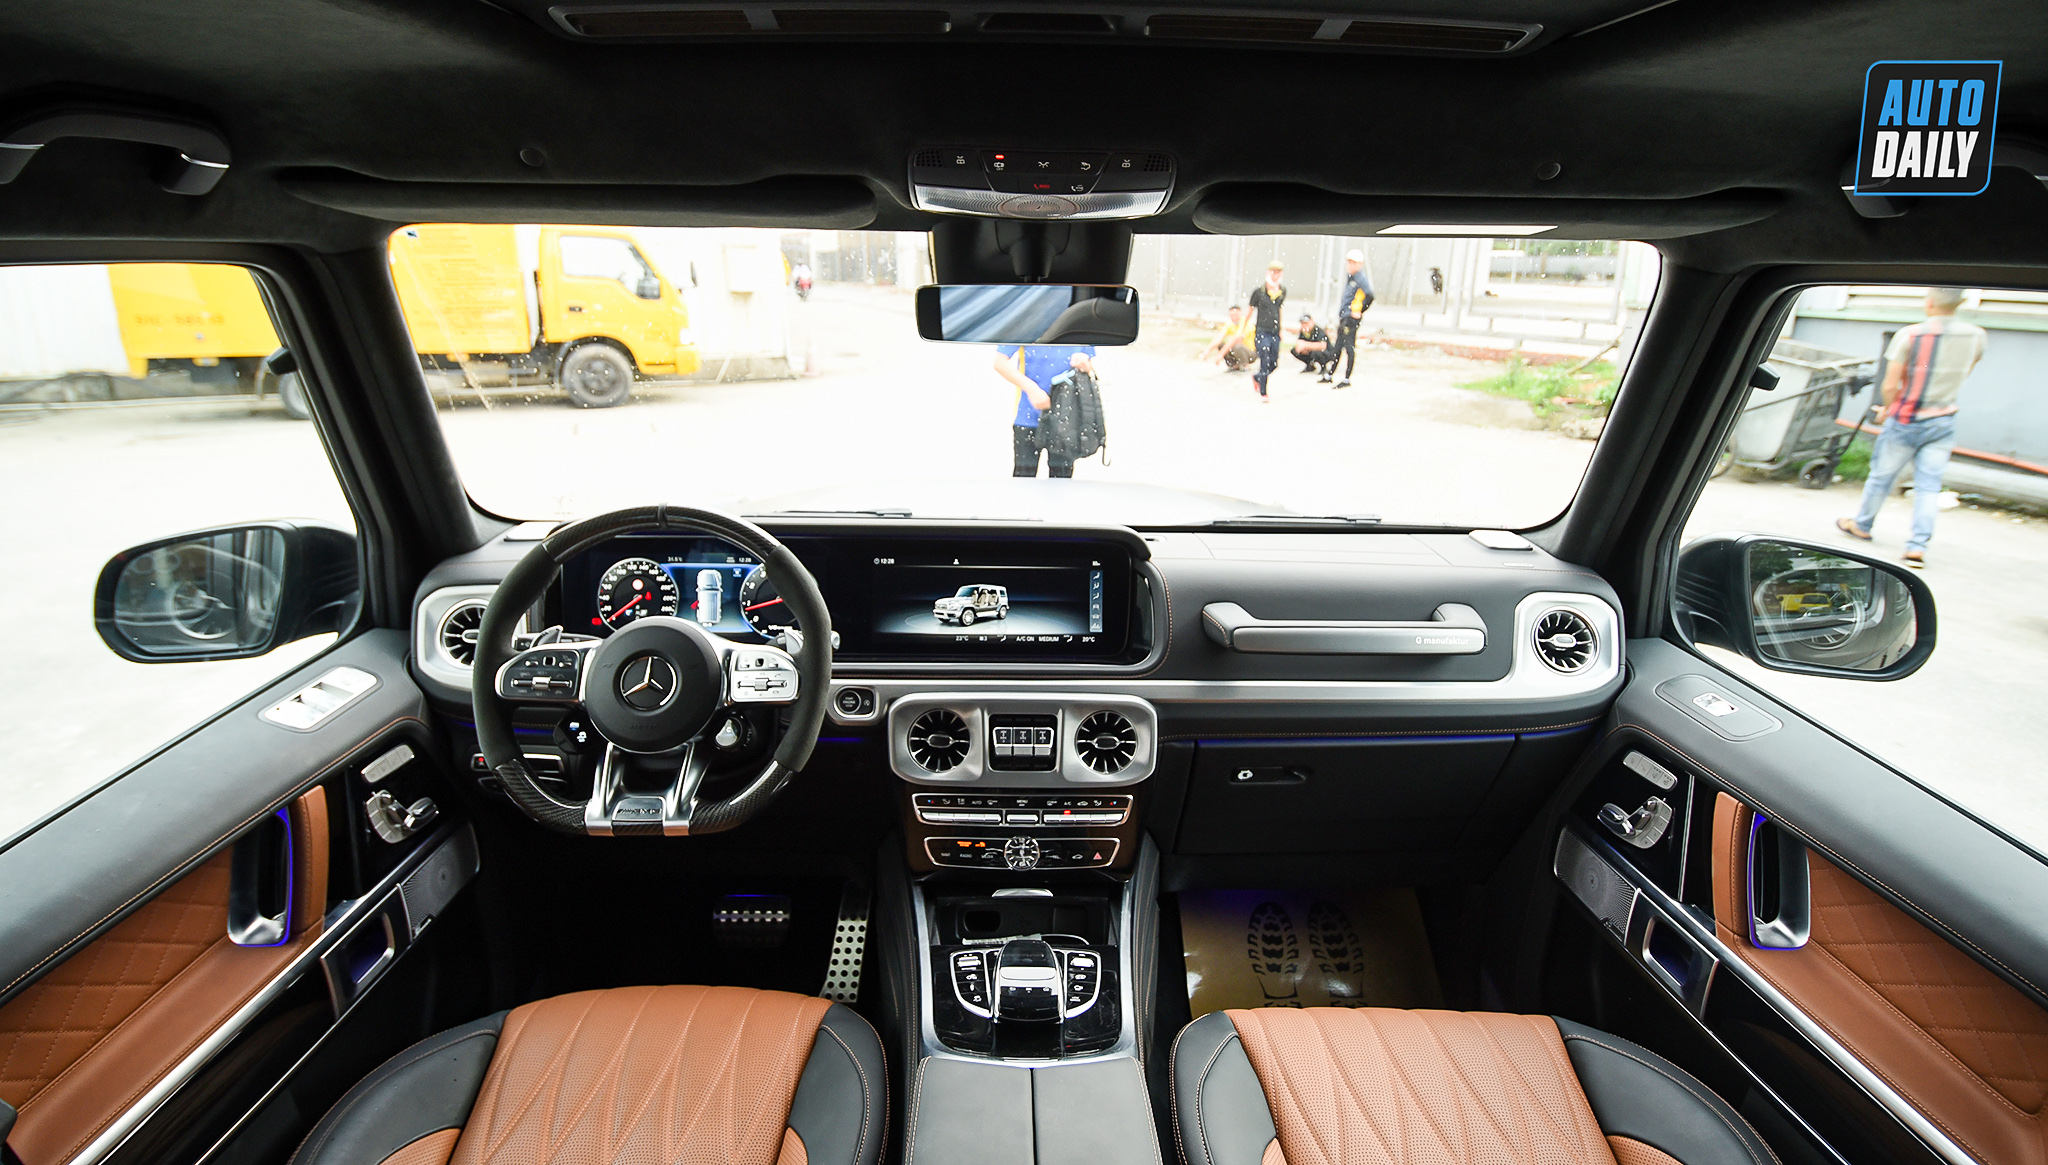 Mercedes-AMG G63 2021 độ Hofele giá hơn 12 tỷ tại Việt Nam adt-3048-copy.jpg